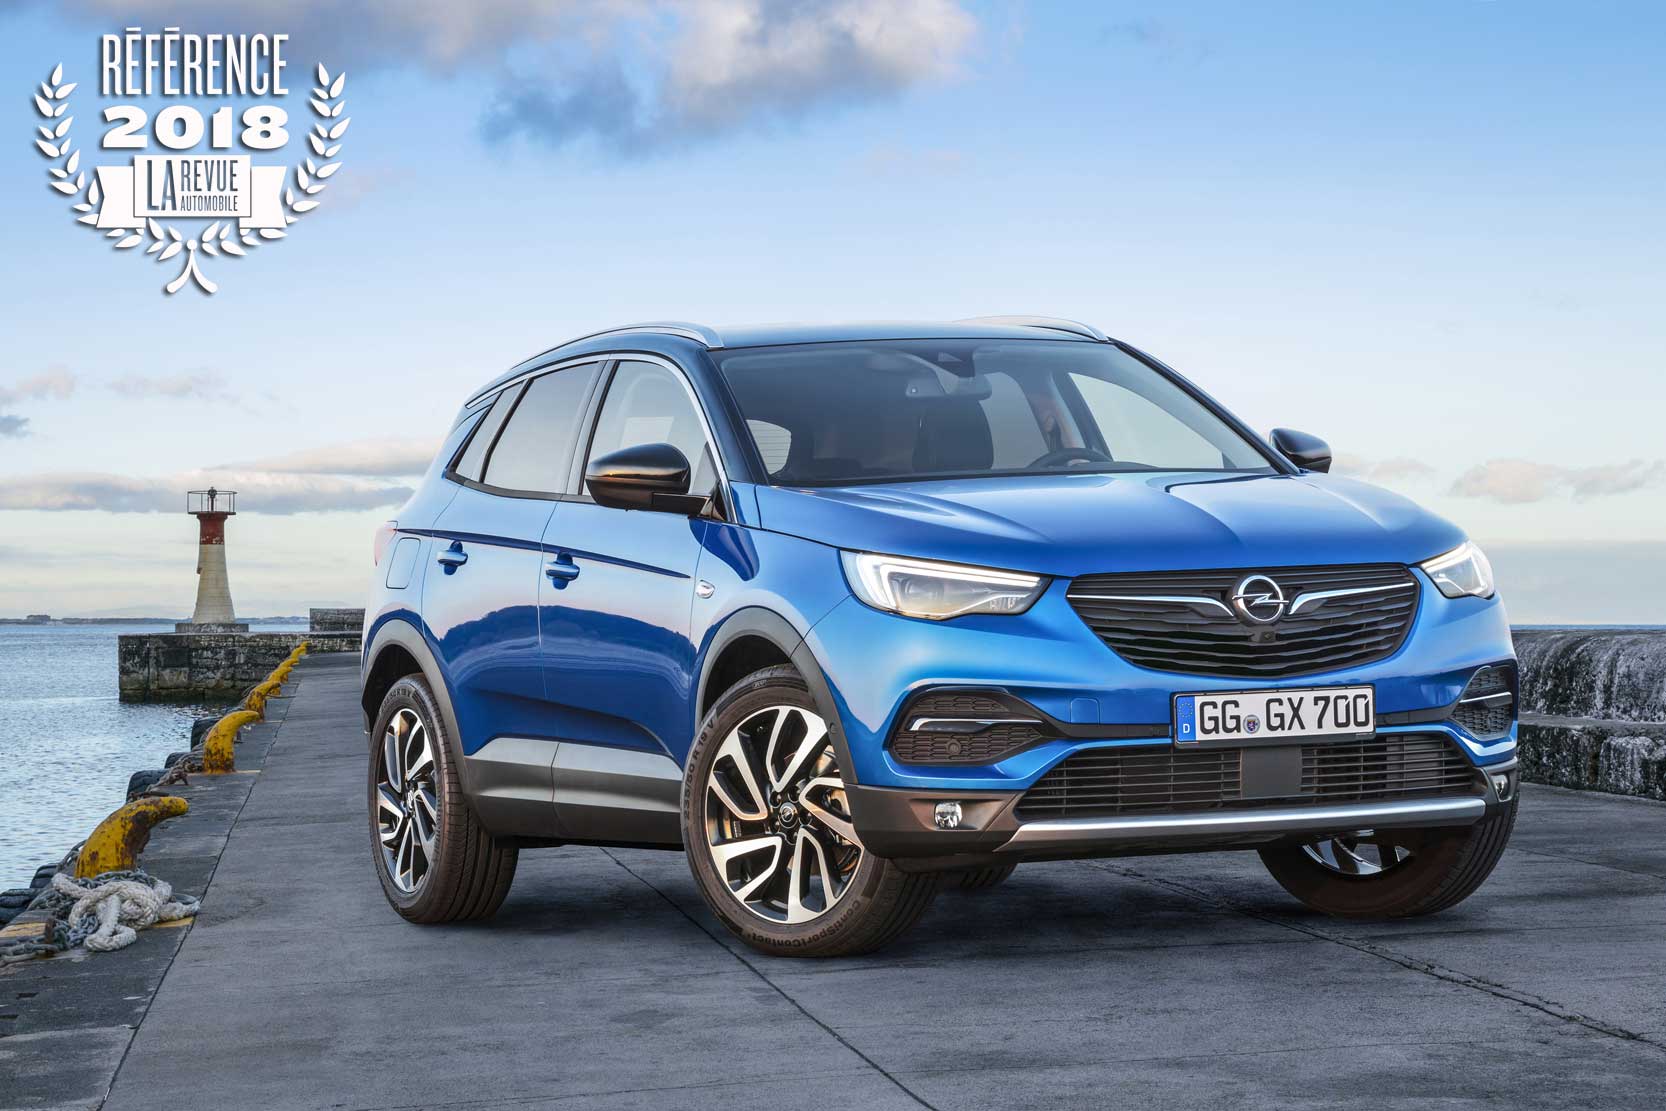 Image principale de l'actu: Le meilleur SUV compact 2018 : l'Opel Grandland X devient notre référence